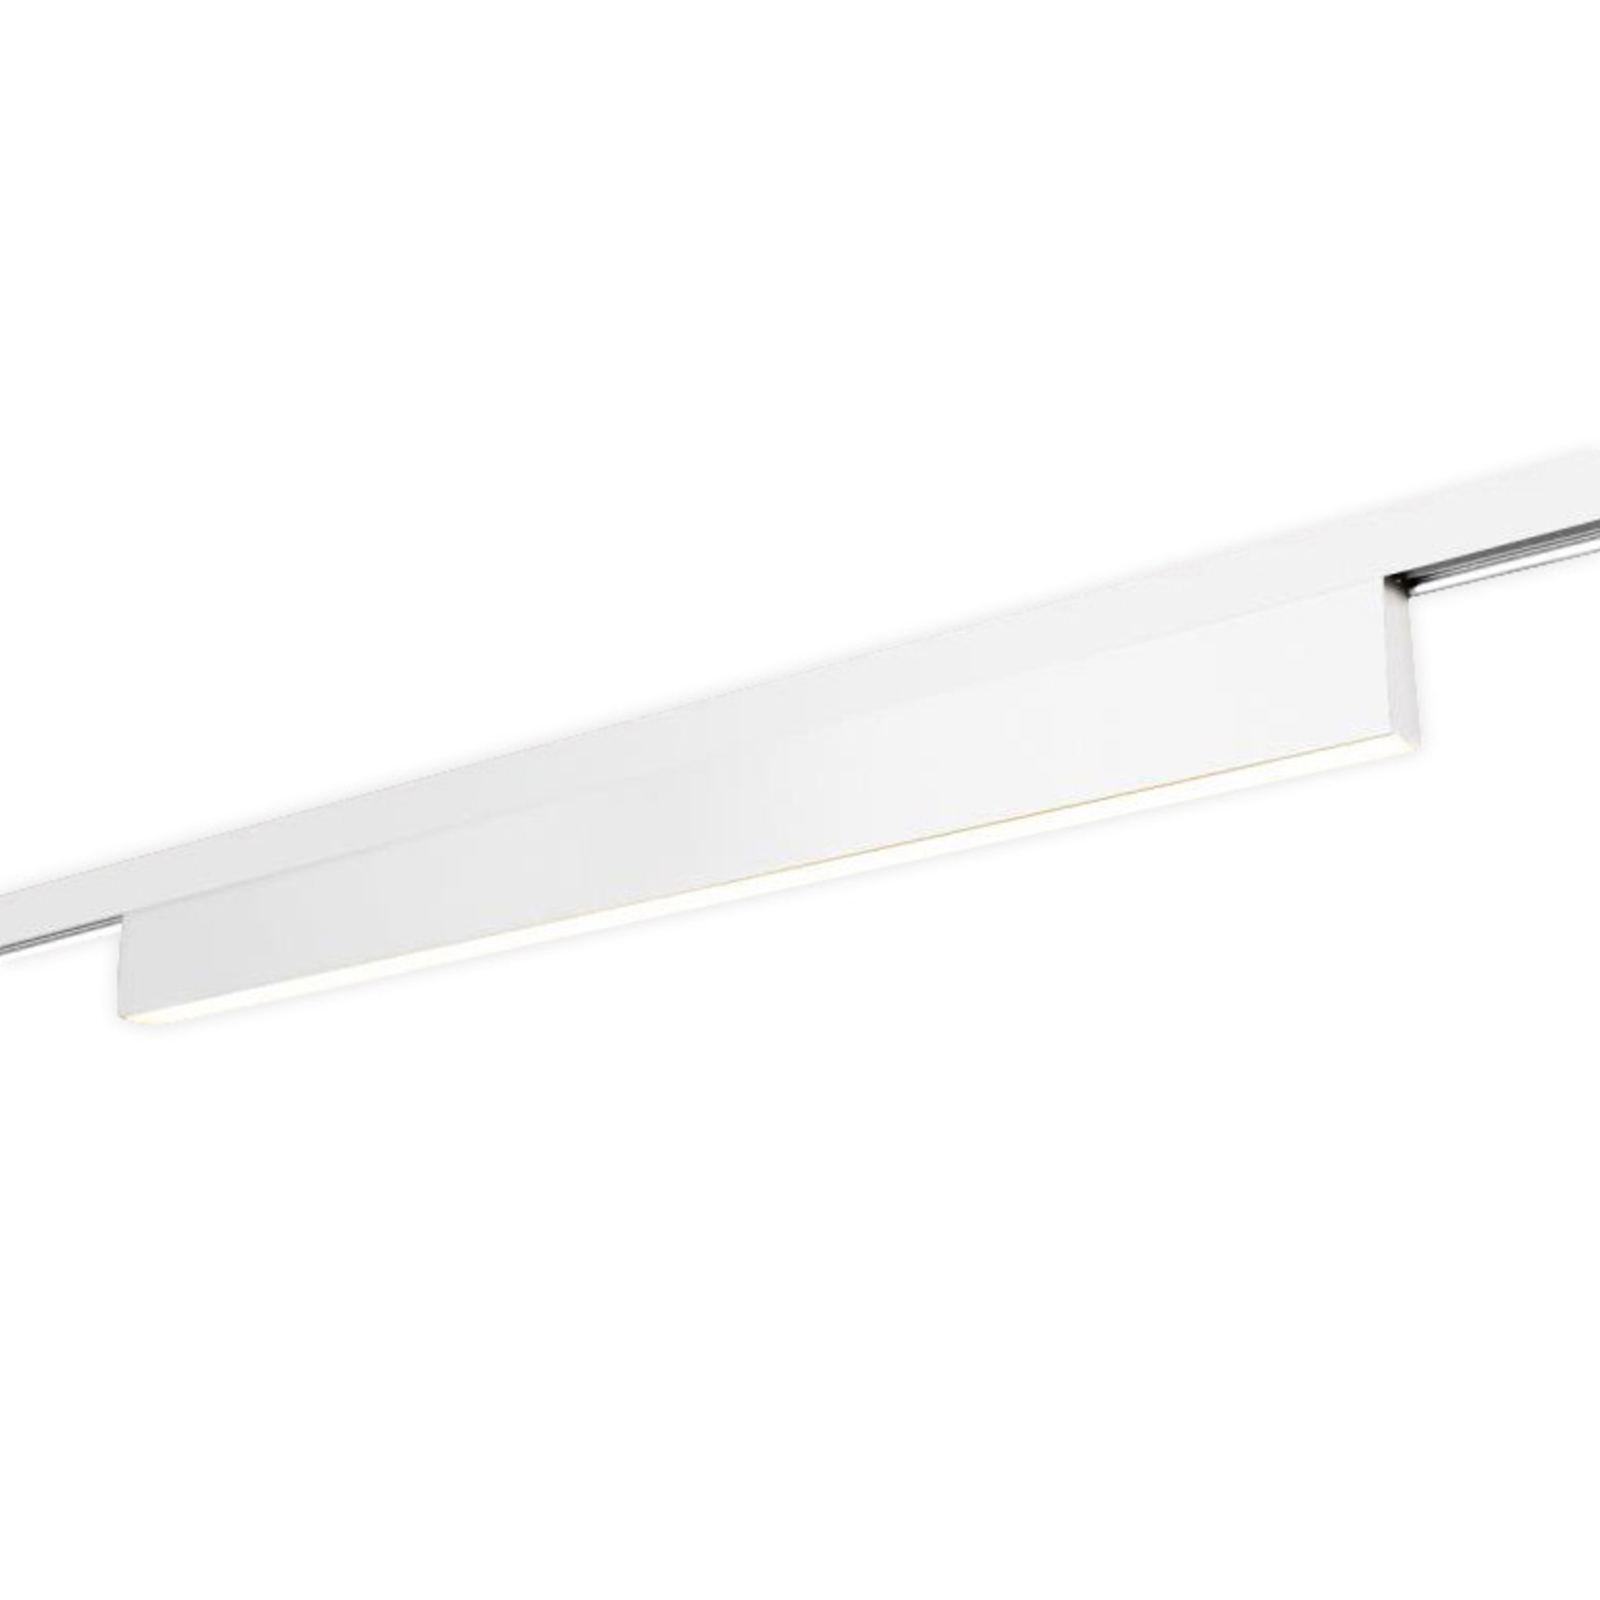 V-Line Volare LED track light, 11 W white 940